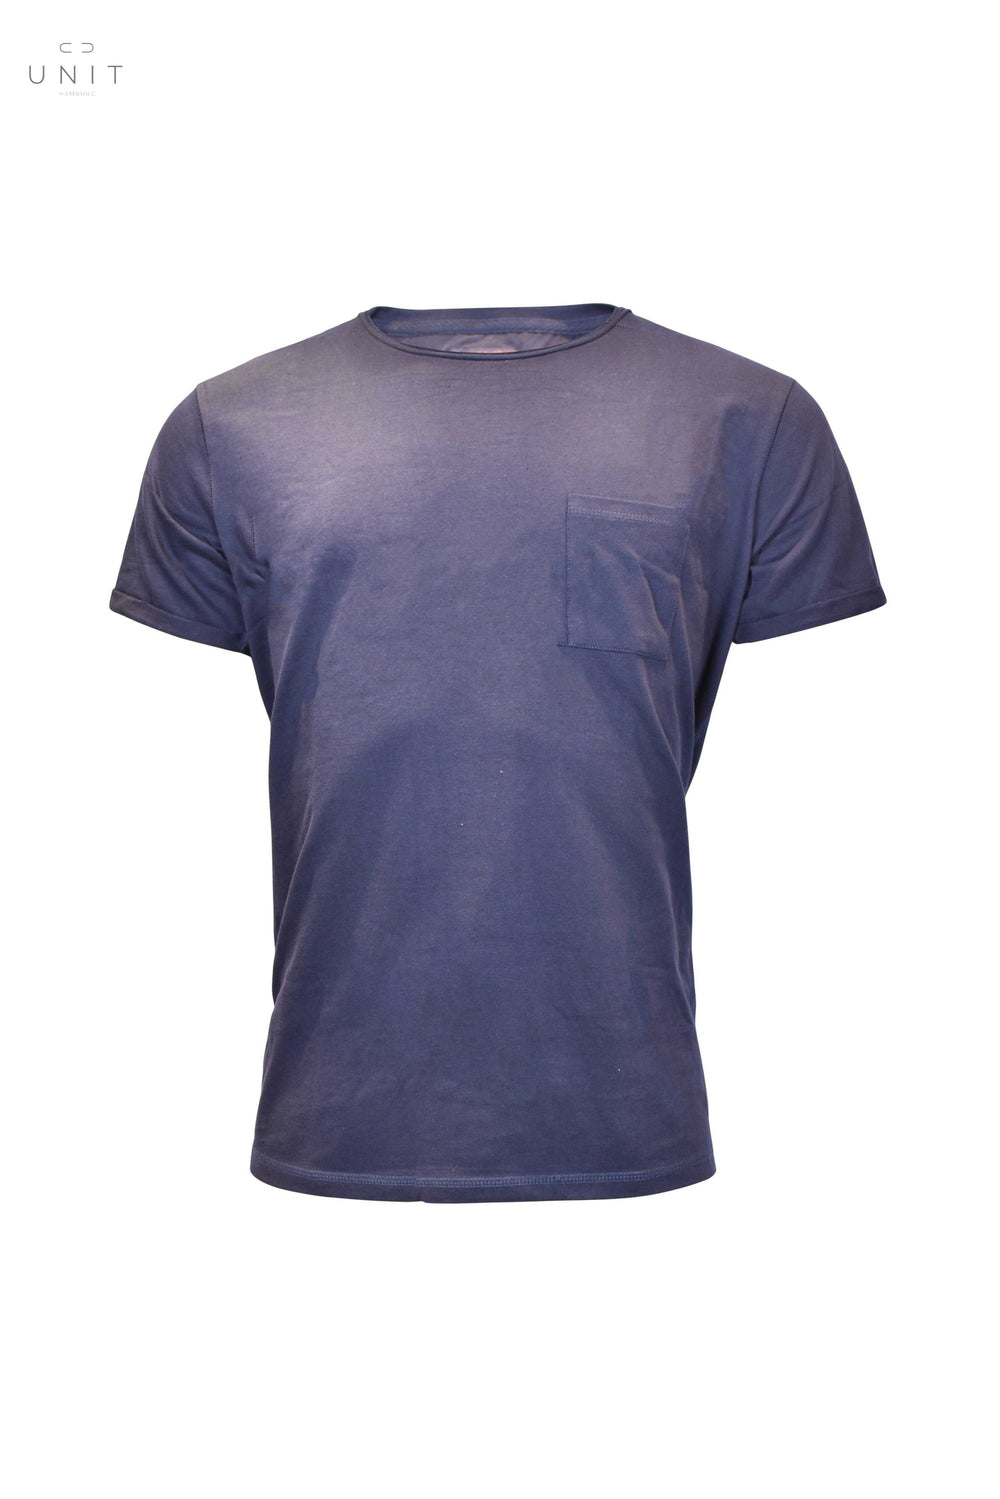 Blue de Genes,,Blue de Genes Sagi Nuovo T-Shirt BdG. front pocket shirt,UNIT Hamburg